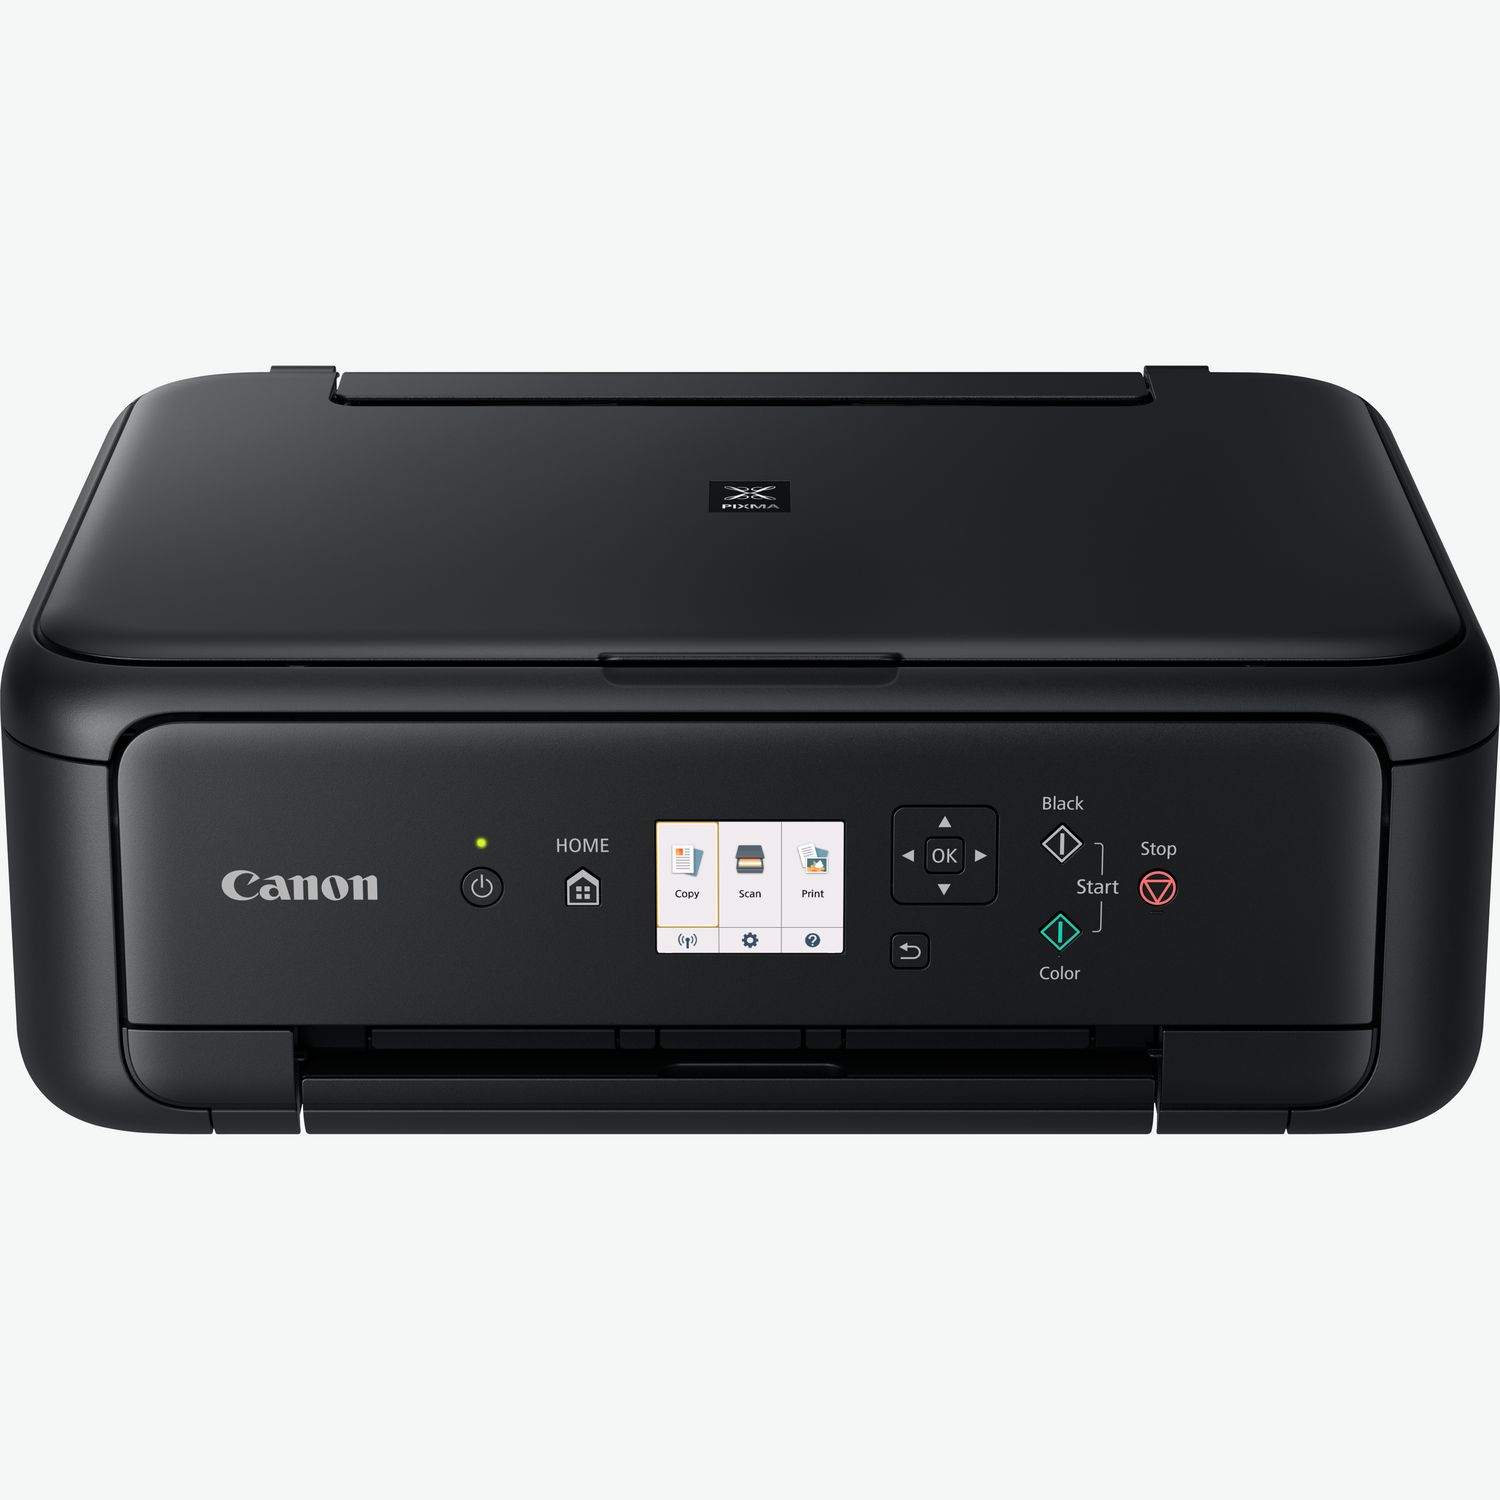 Cartouche d'encre PIXMA pour Canon TS3151 TS 3151, pour imprimante